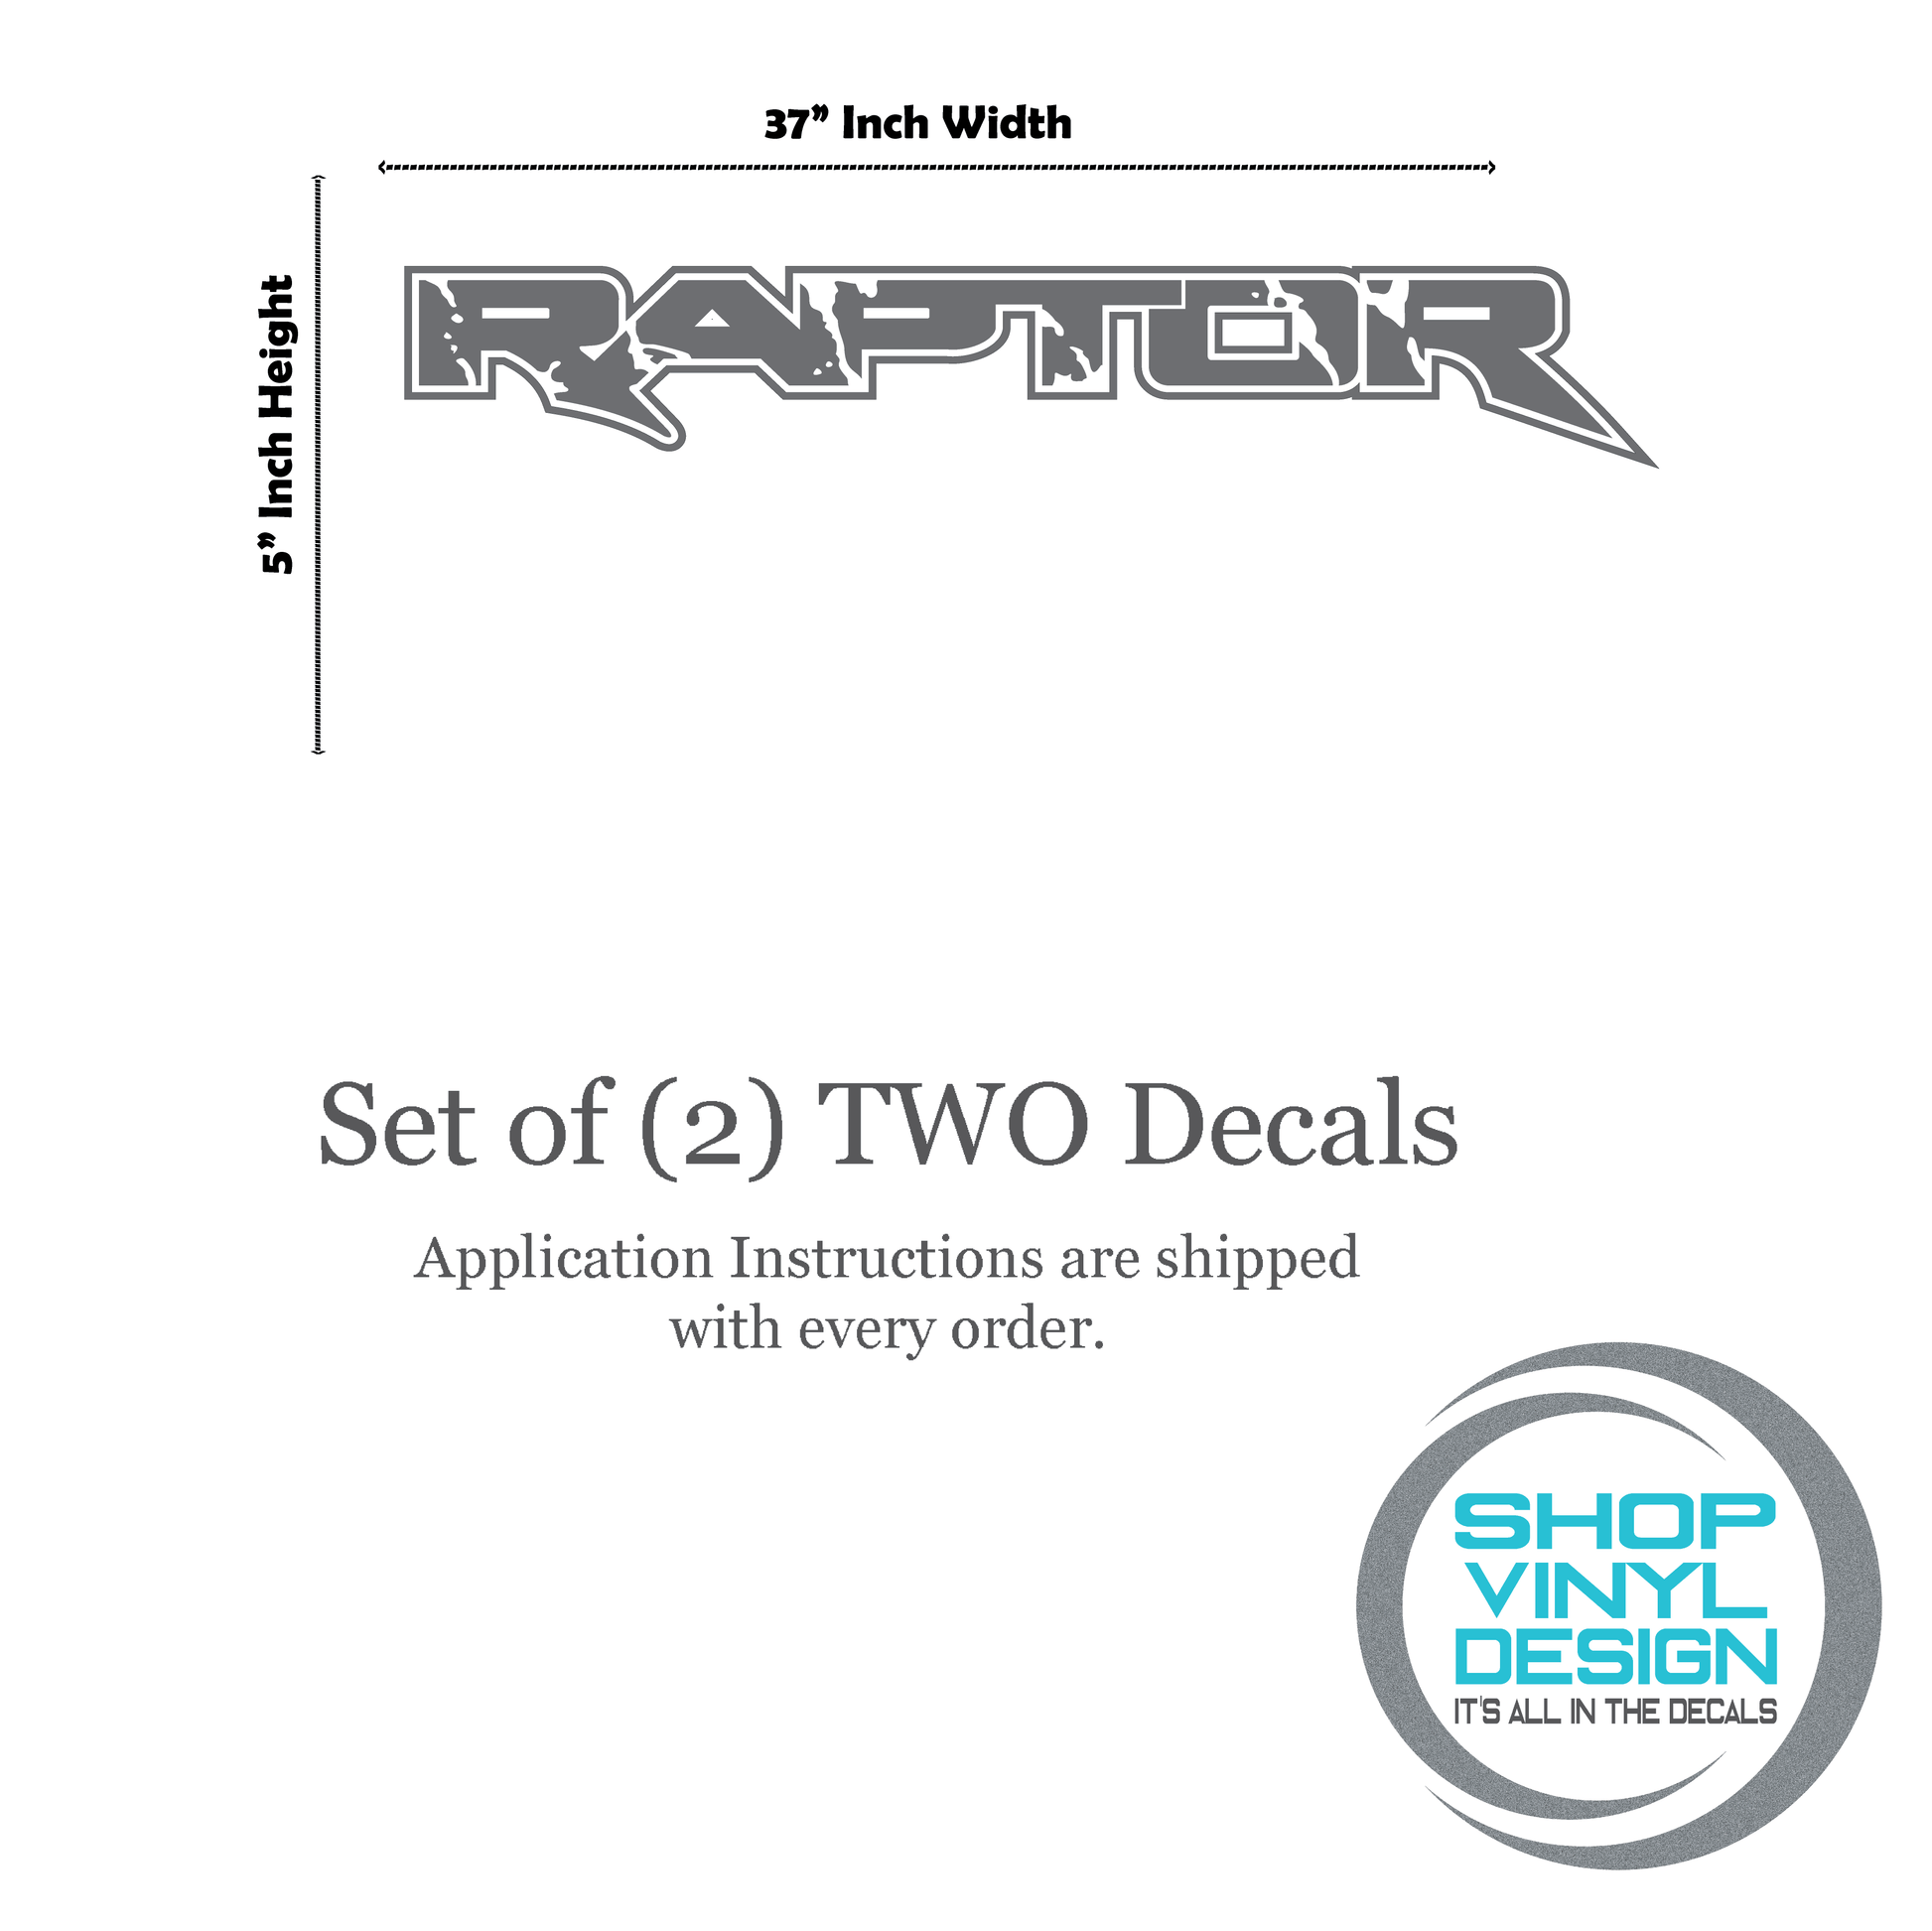 Shop Vinyl Design F-150 Raptor Replacement Bedside Decals #19 Vehicle Vinyl Graphic Decal Shop Vinyl Design decals stickers